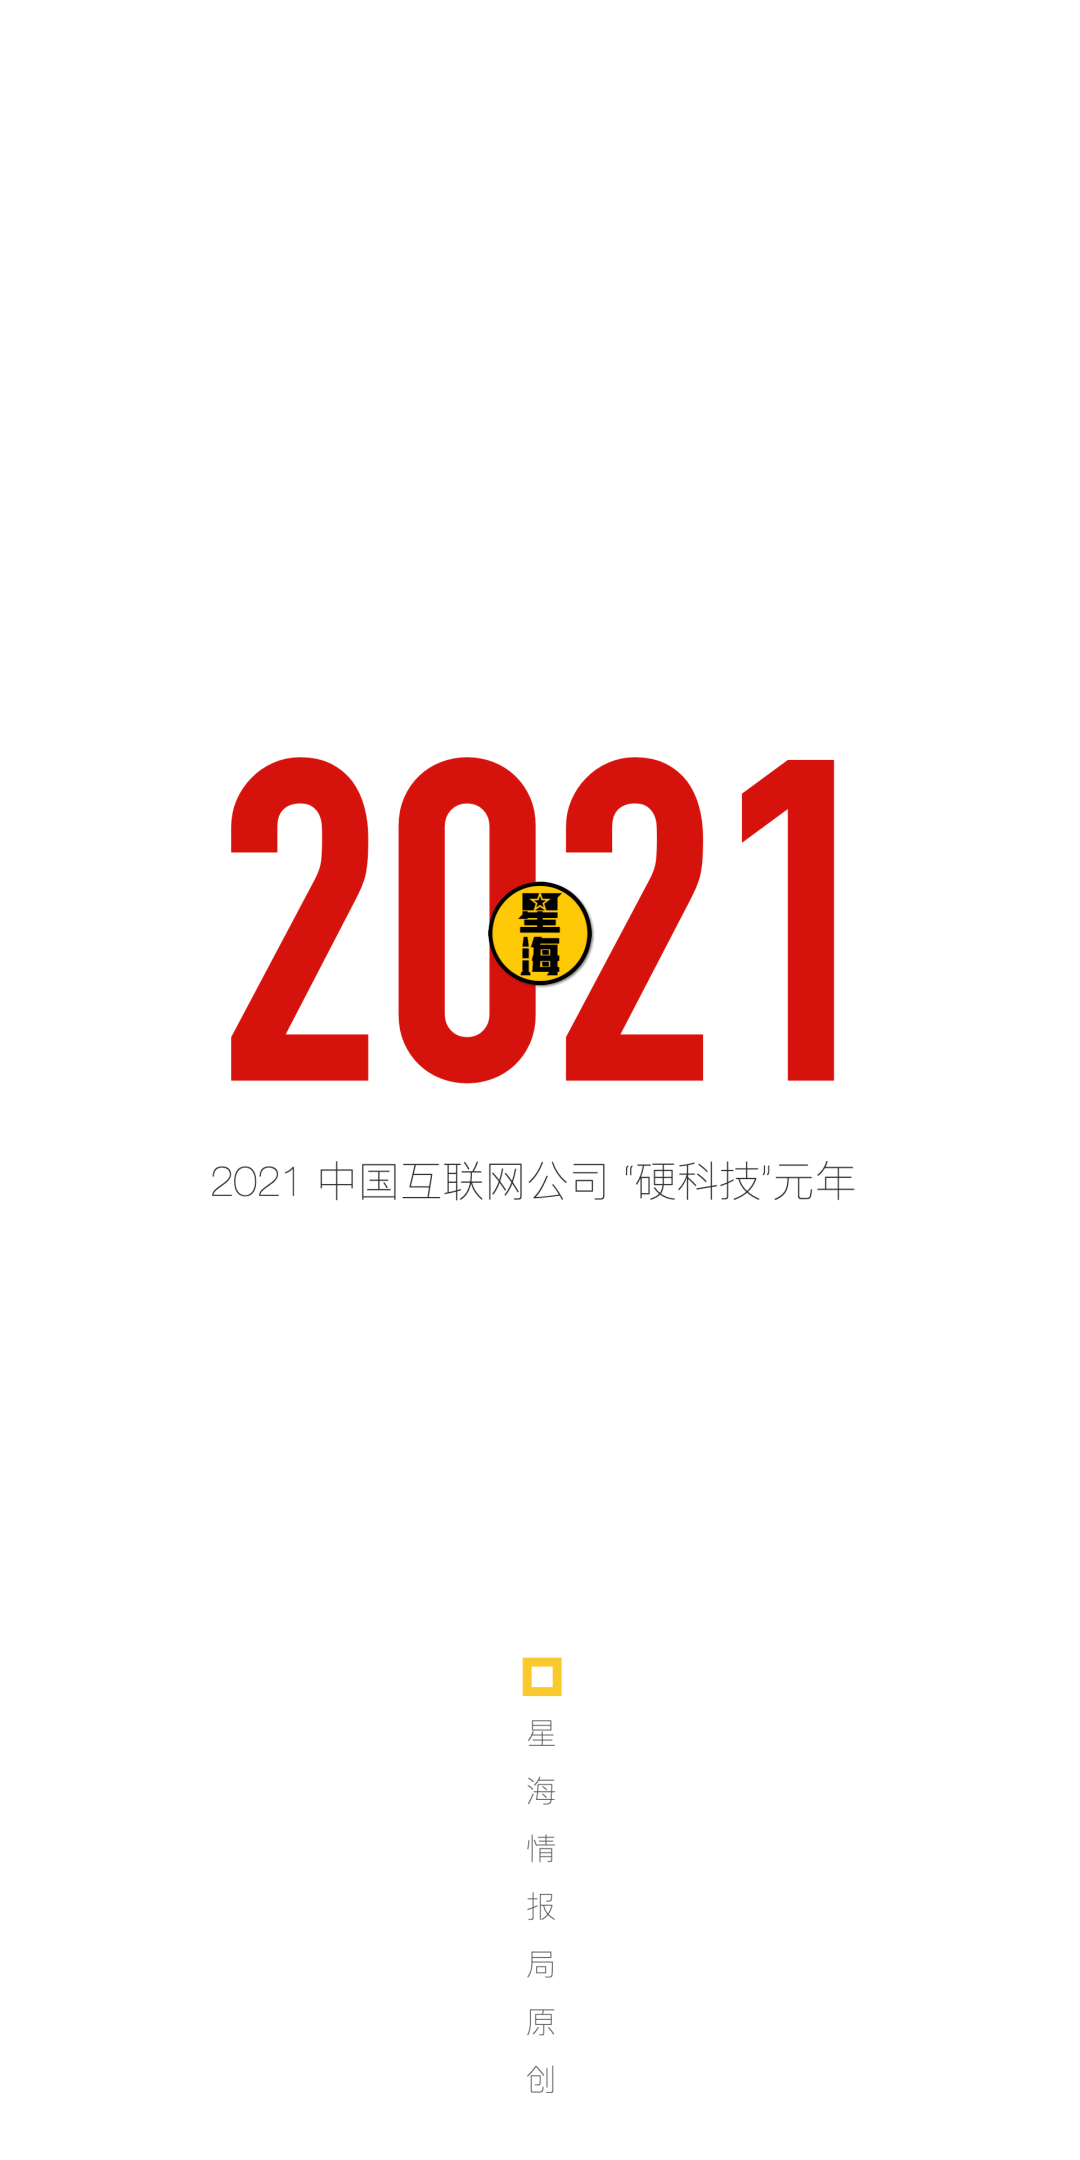 2021，中国互联网公司的“硬科技”元年